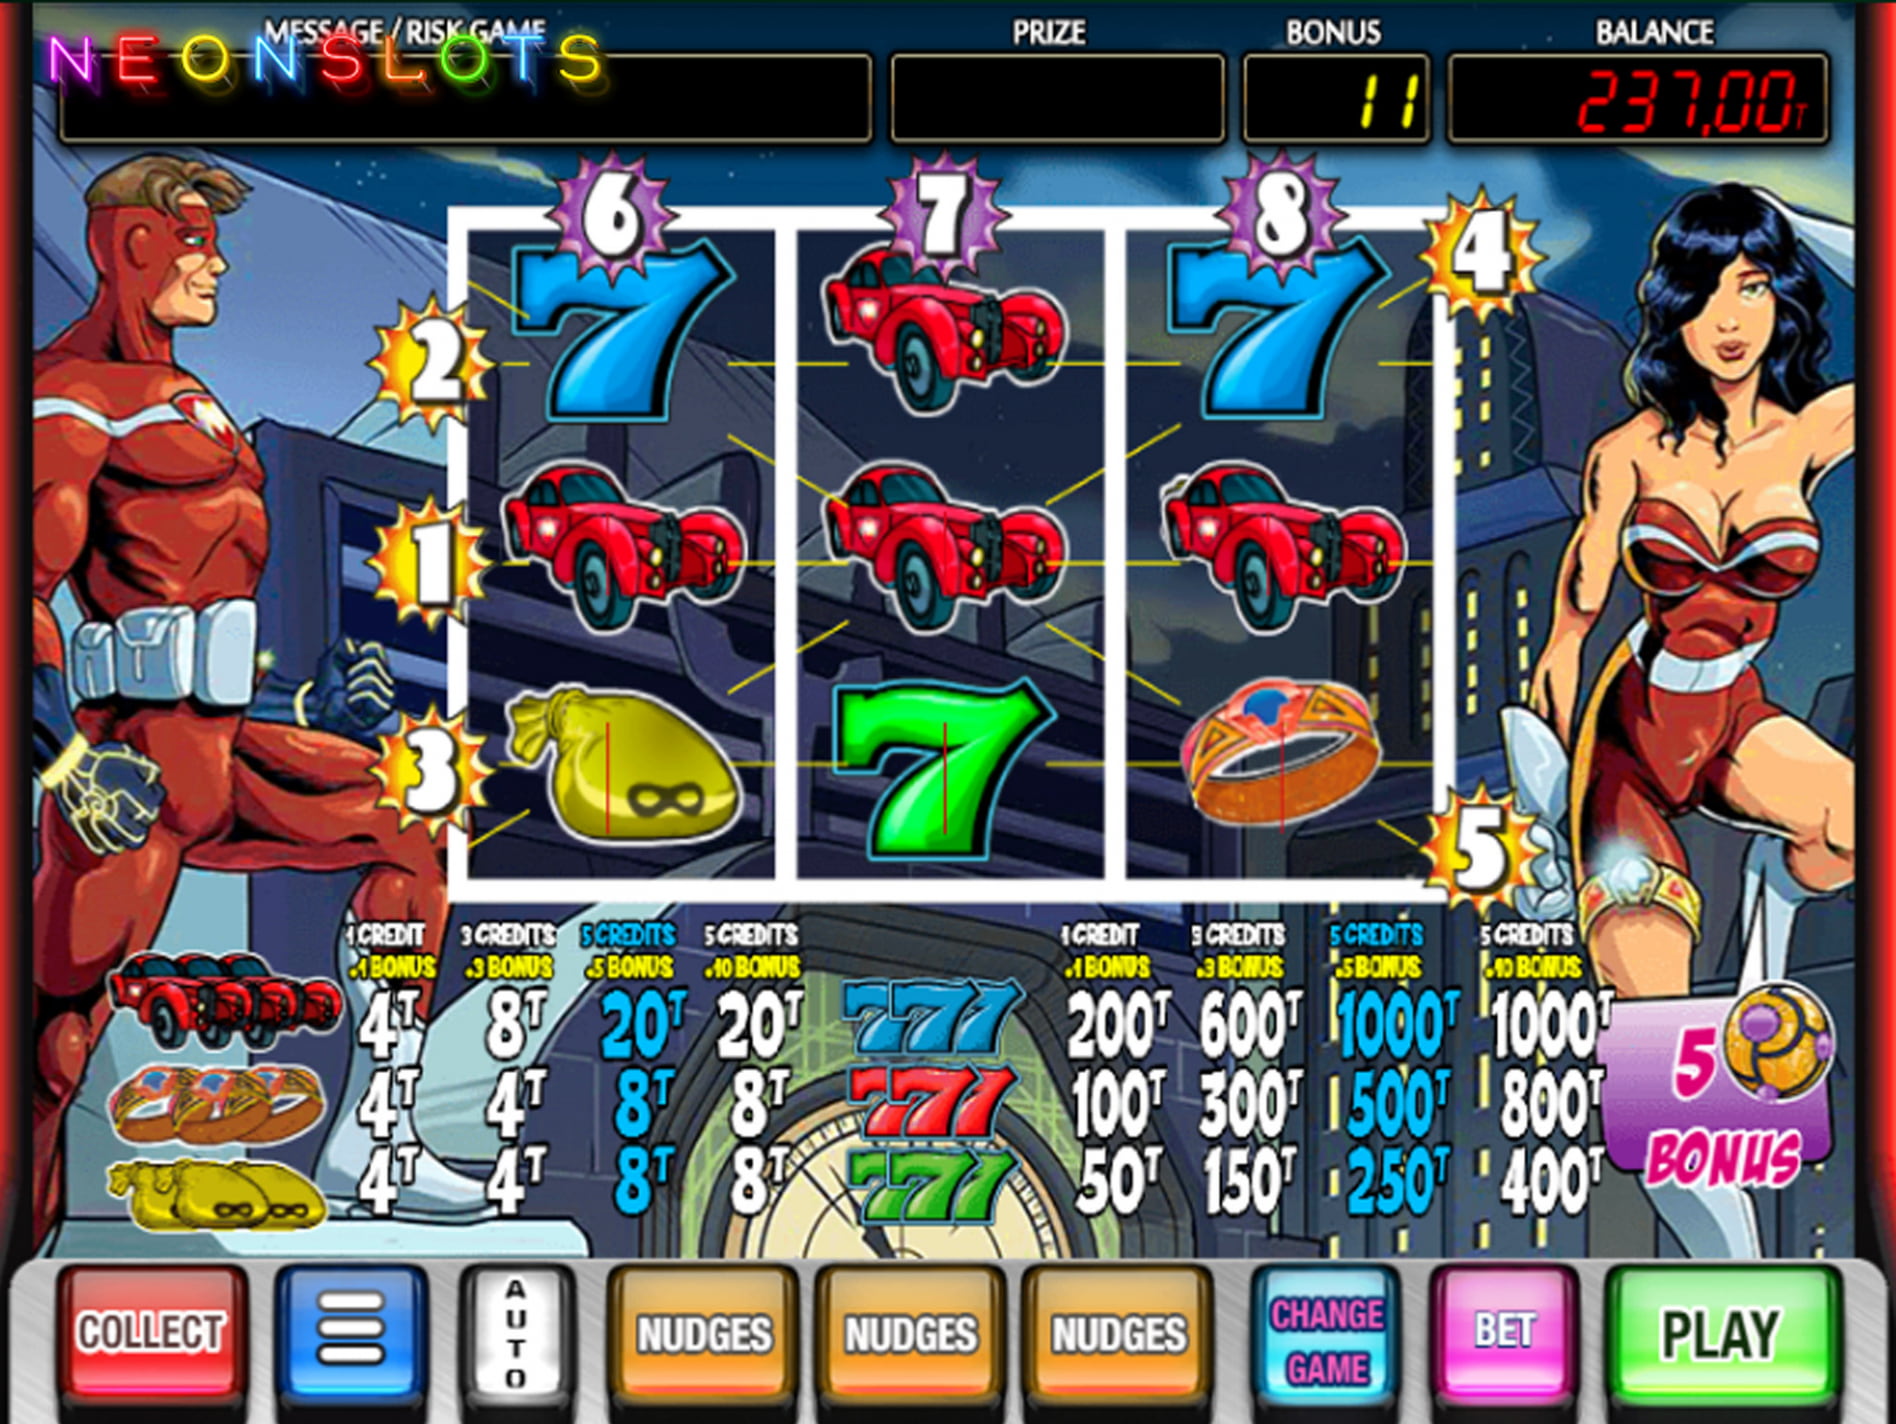 Juegos de casino gratis cleopatra como jugar loteria Alicante - 20559